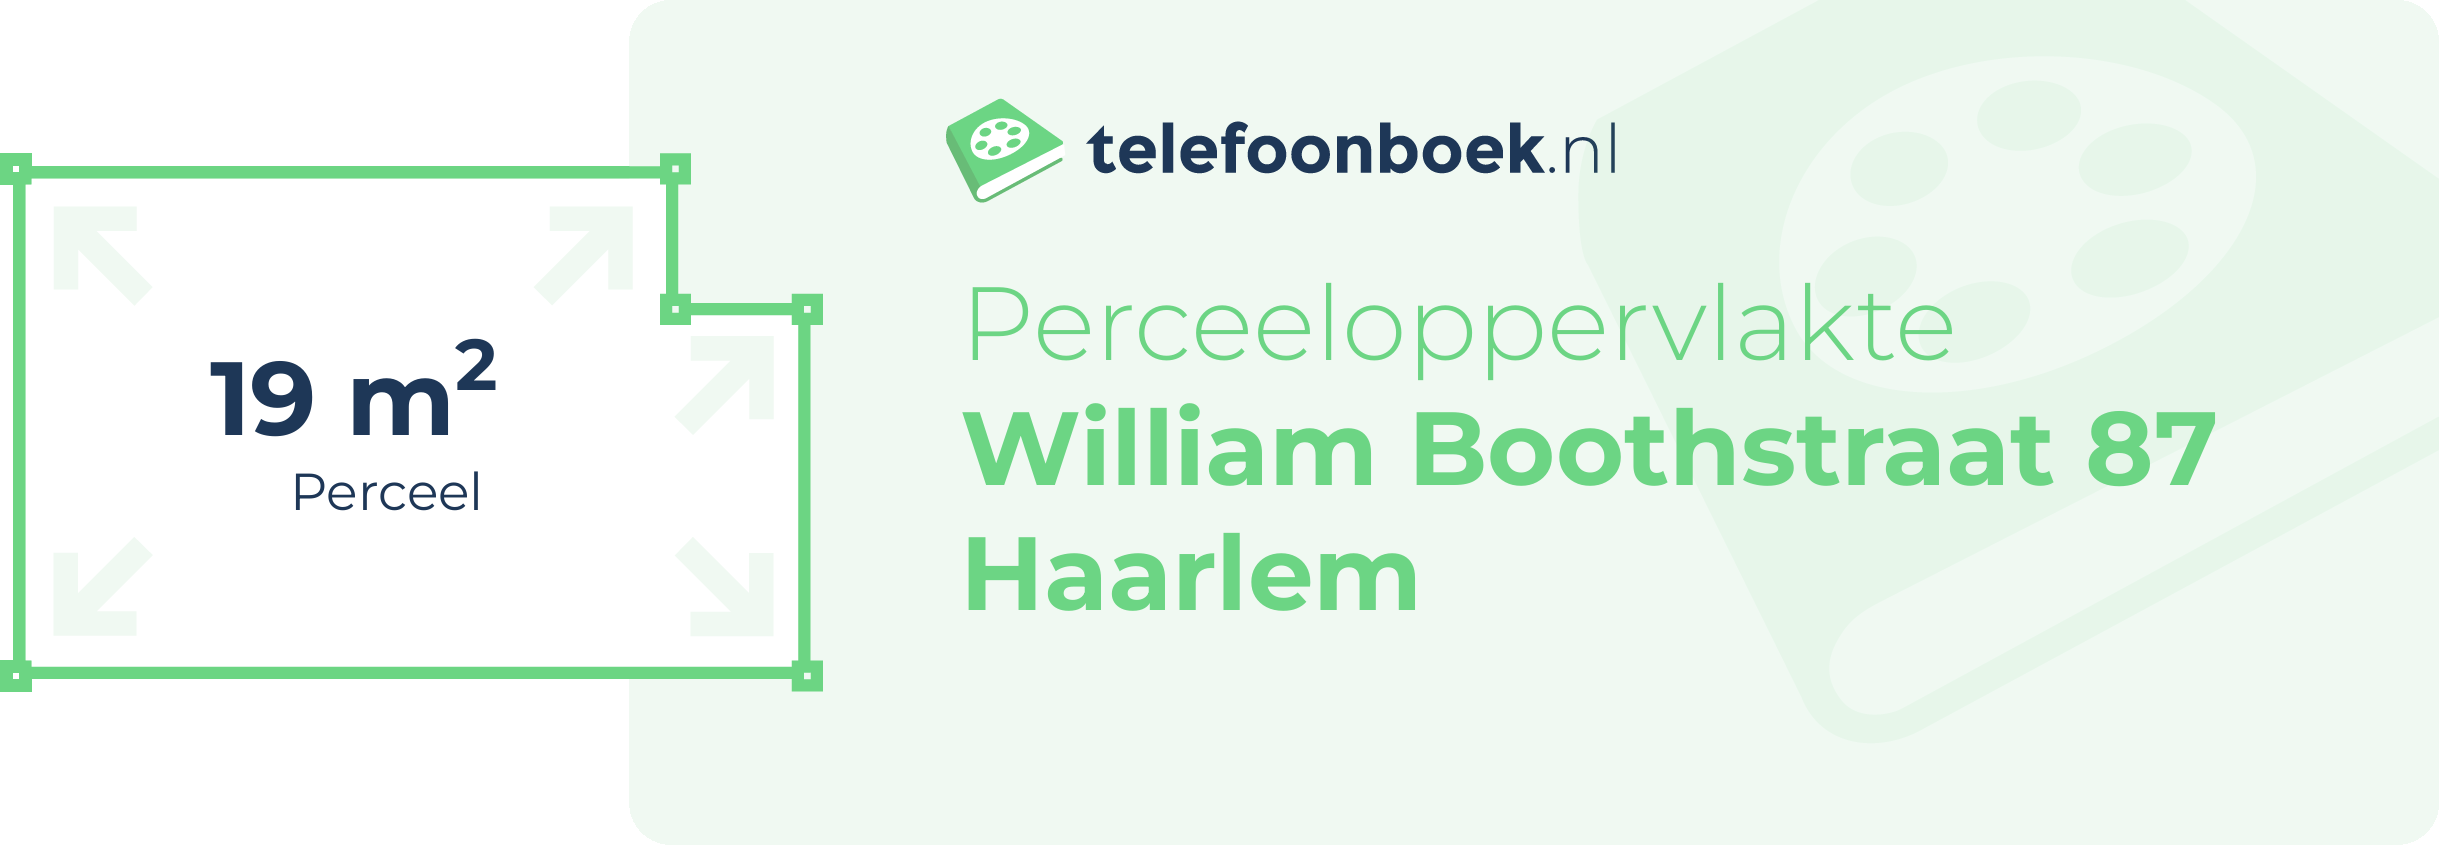 Perceeloppervlakte William Boothstraat 87 Haarlem